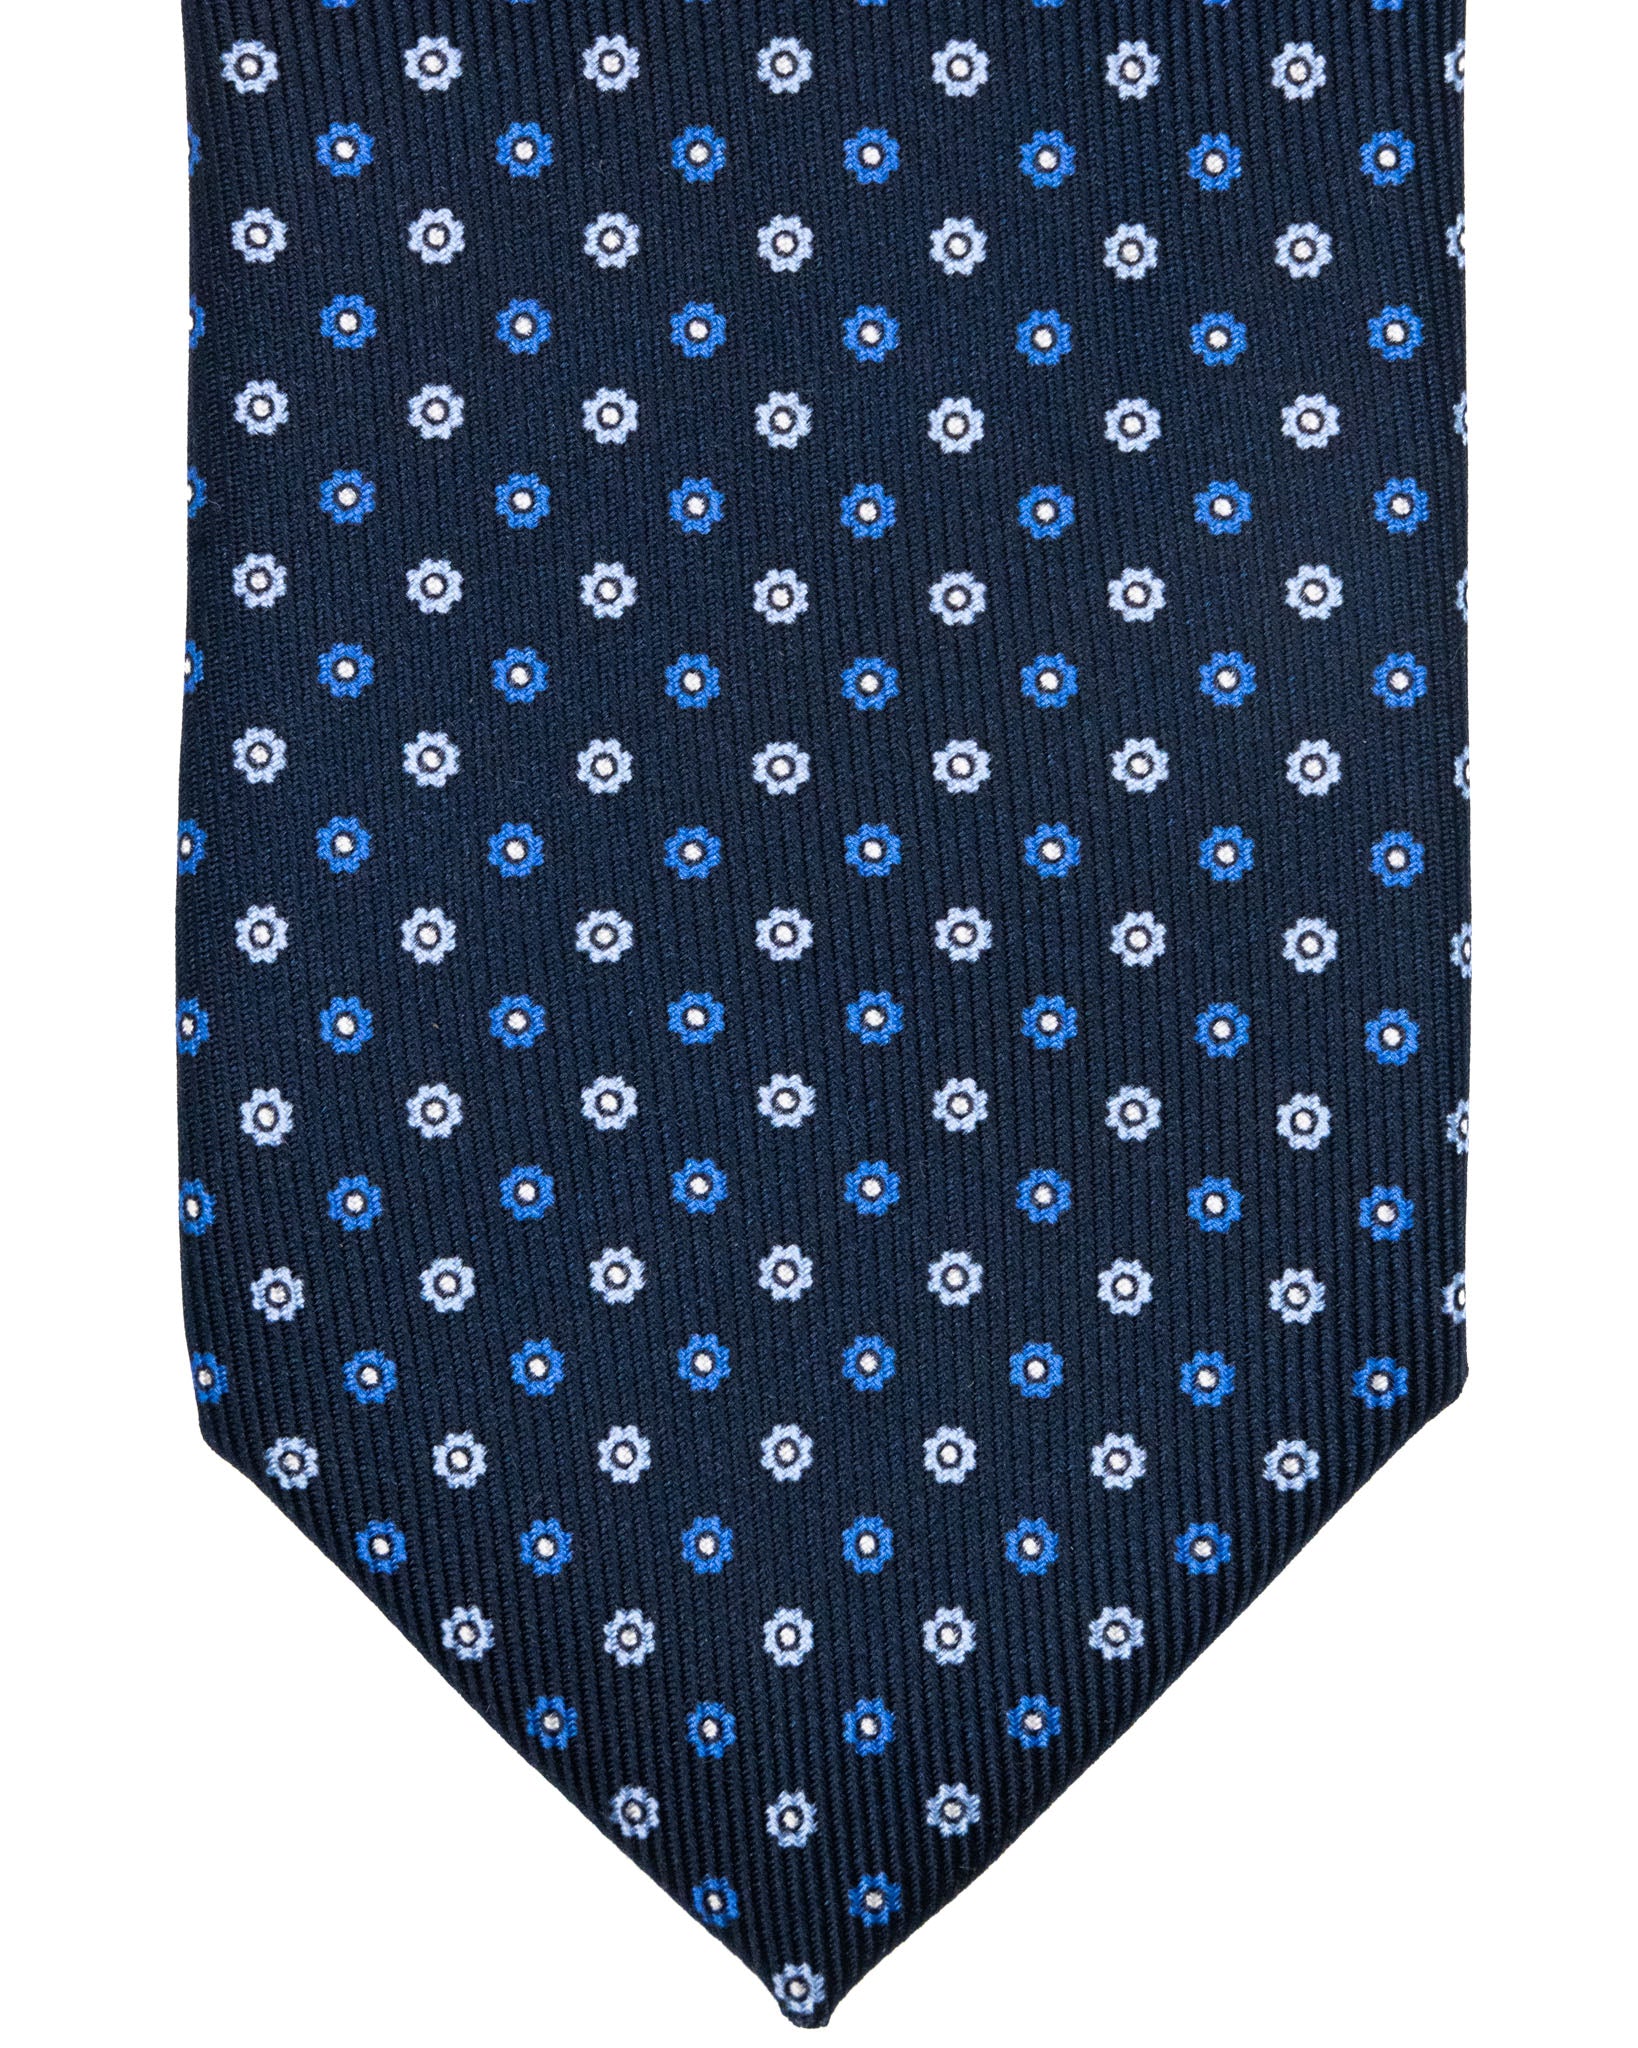 Cravatta - in seta twill navy a fantasia fiori azzurri